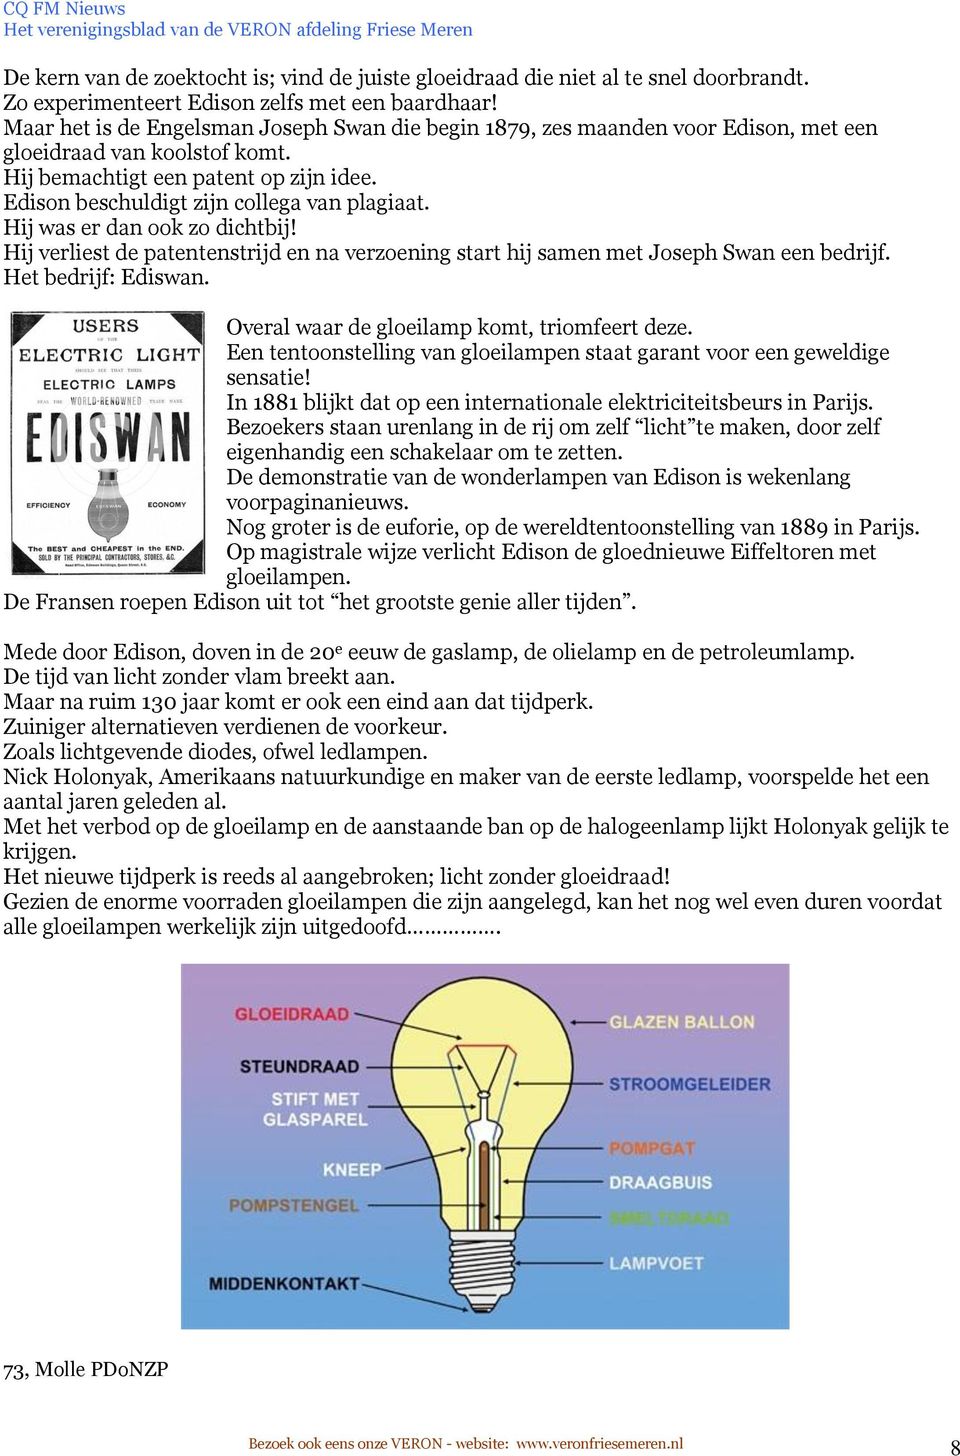 Edison beschuldigt zijn collega van plagiaat. Hij was er dan ook zo dichtbij! Hij verliest de patentenstrijd en na verzoening start hij samen met Joseph Swan een bedrijf. Het bedrijf: Ediswan.